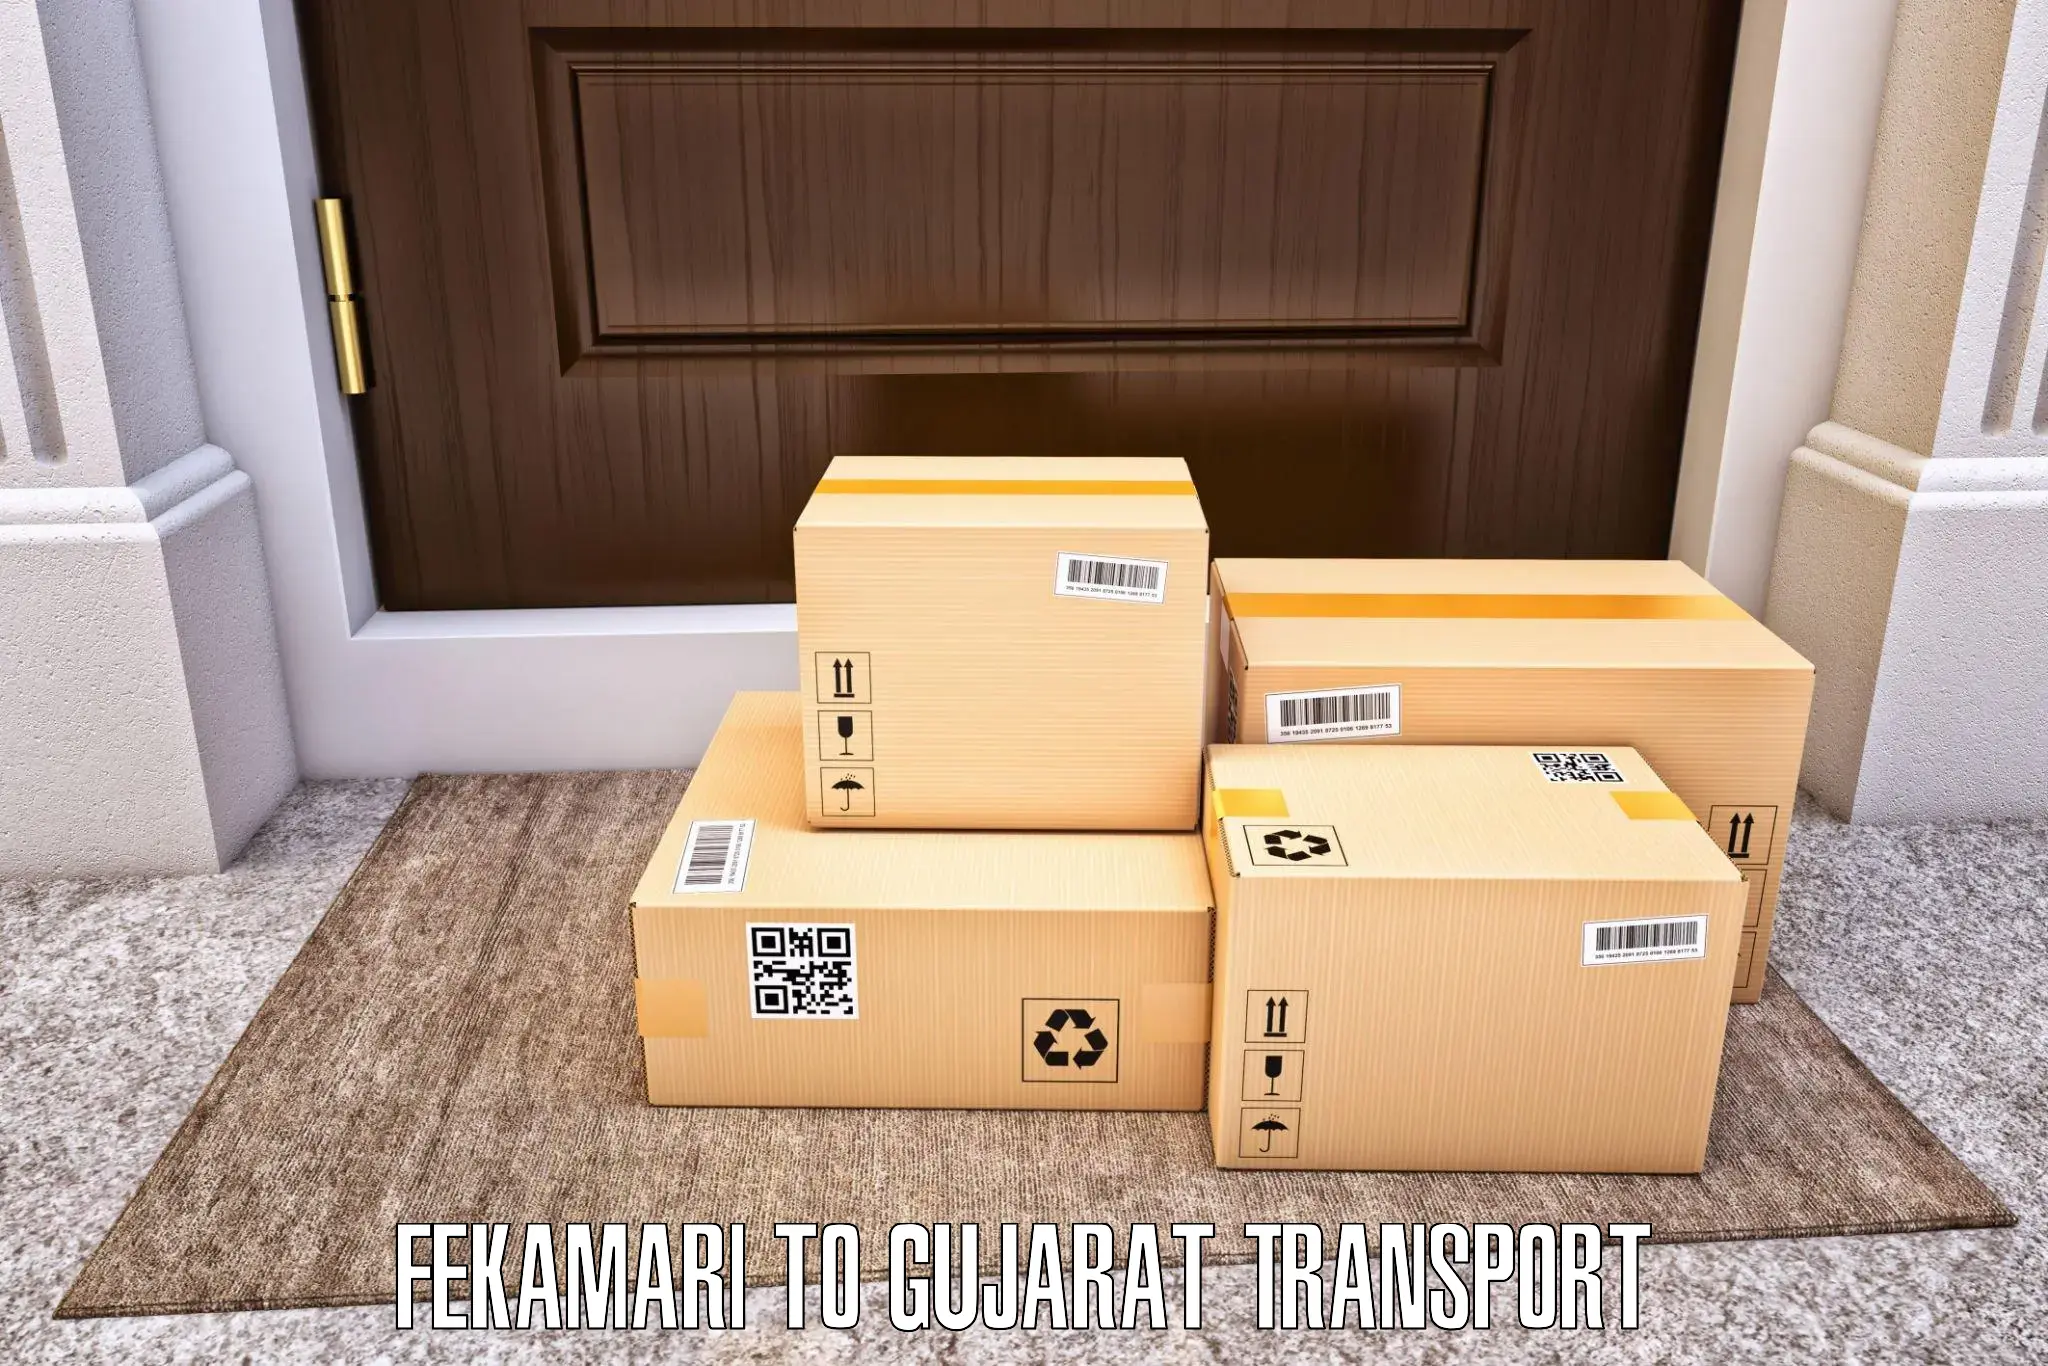 Online transport booking Fekamari to Jamjodhpur